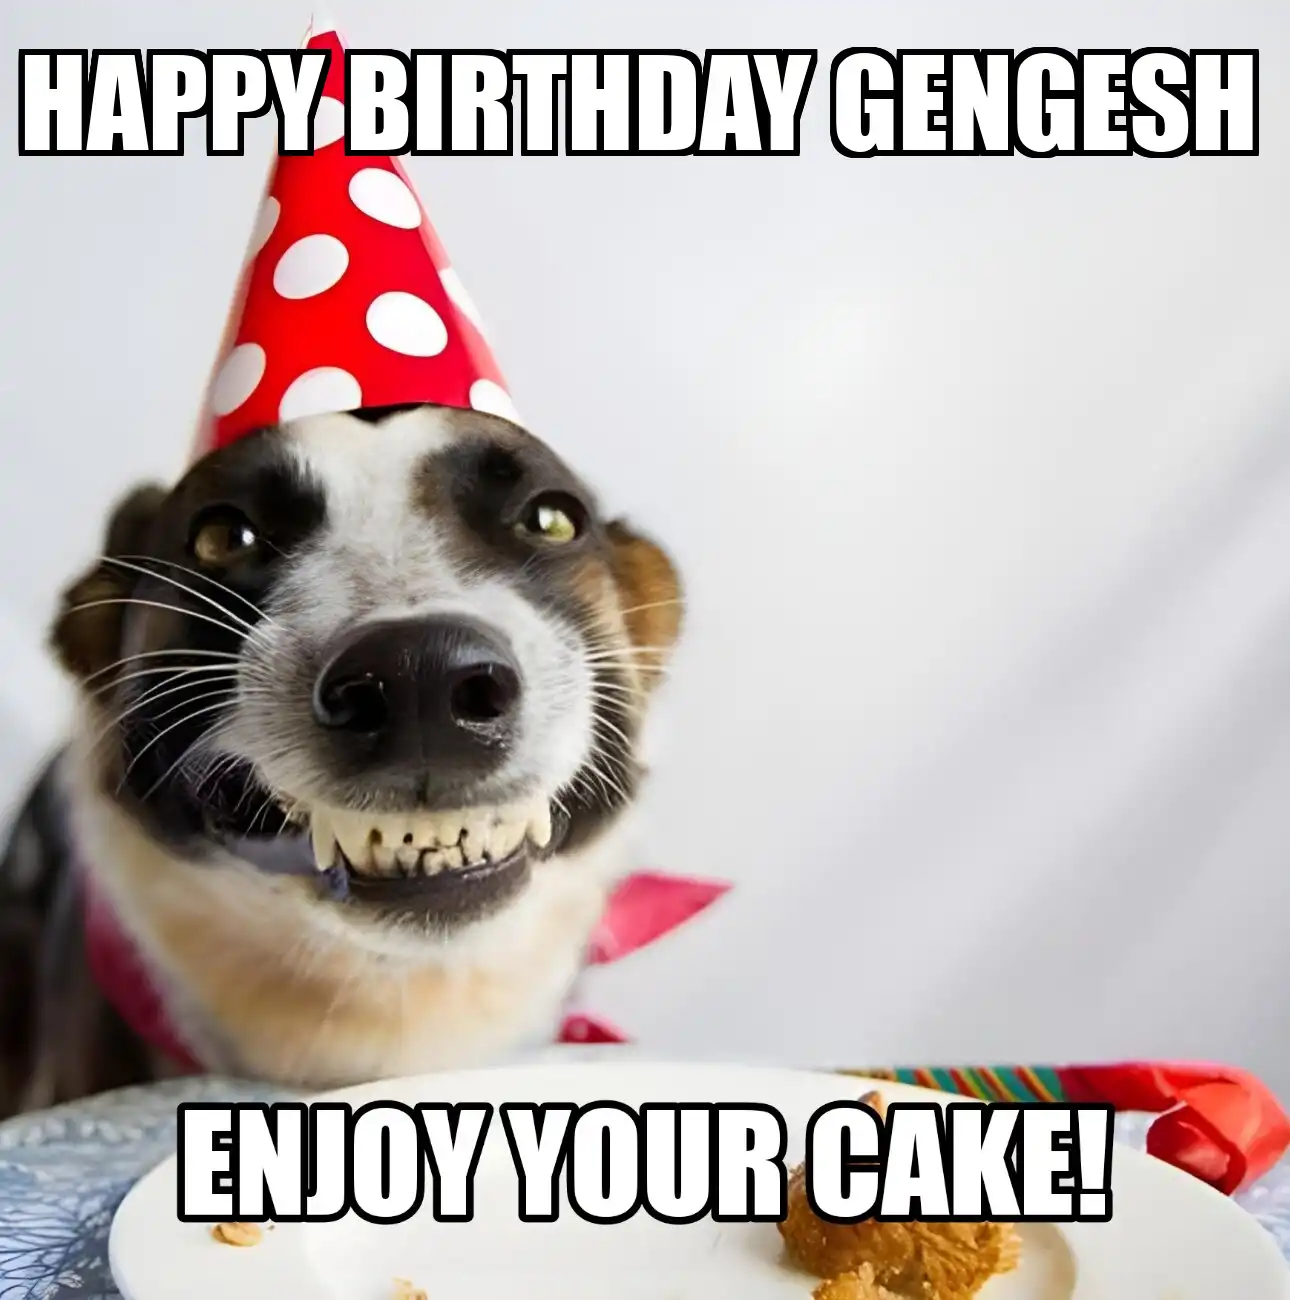 Happy Birthday Gengesh Enjoy Your Cake Dog Meme